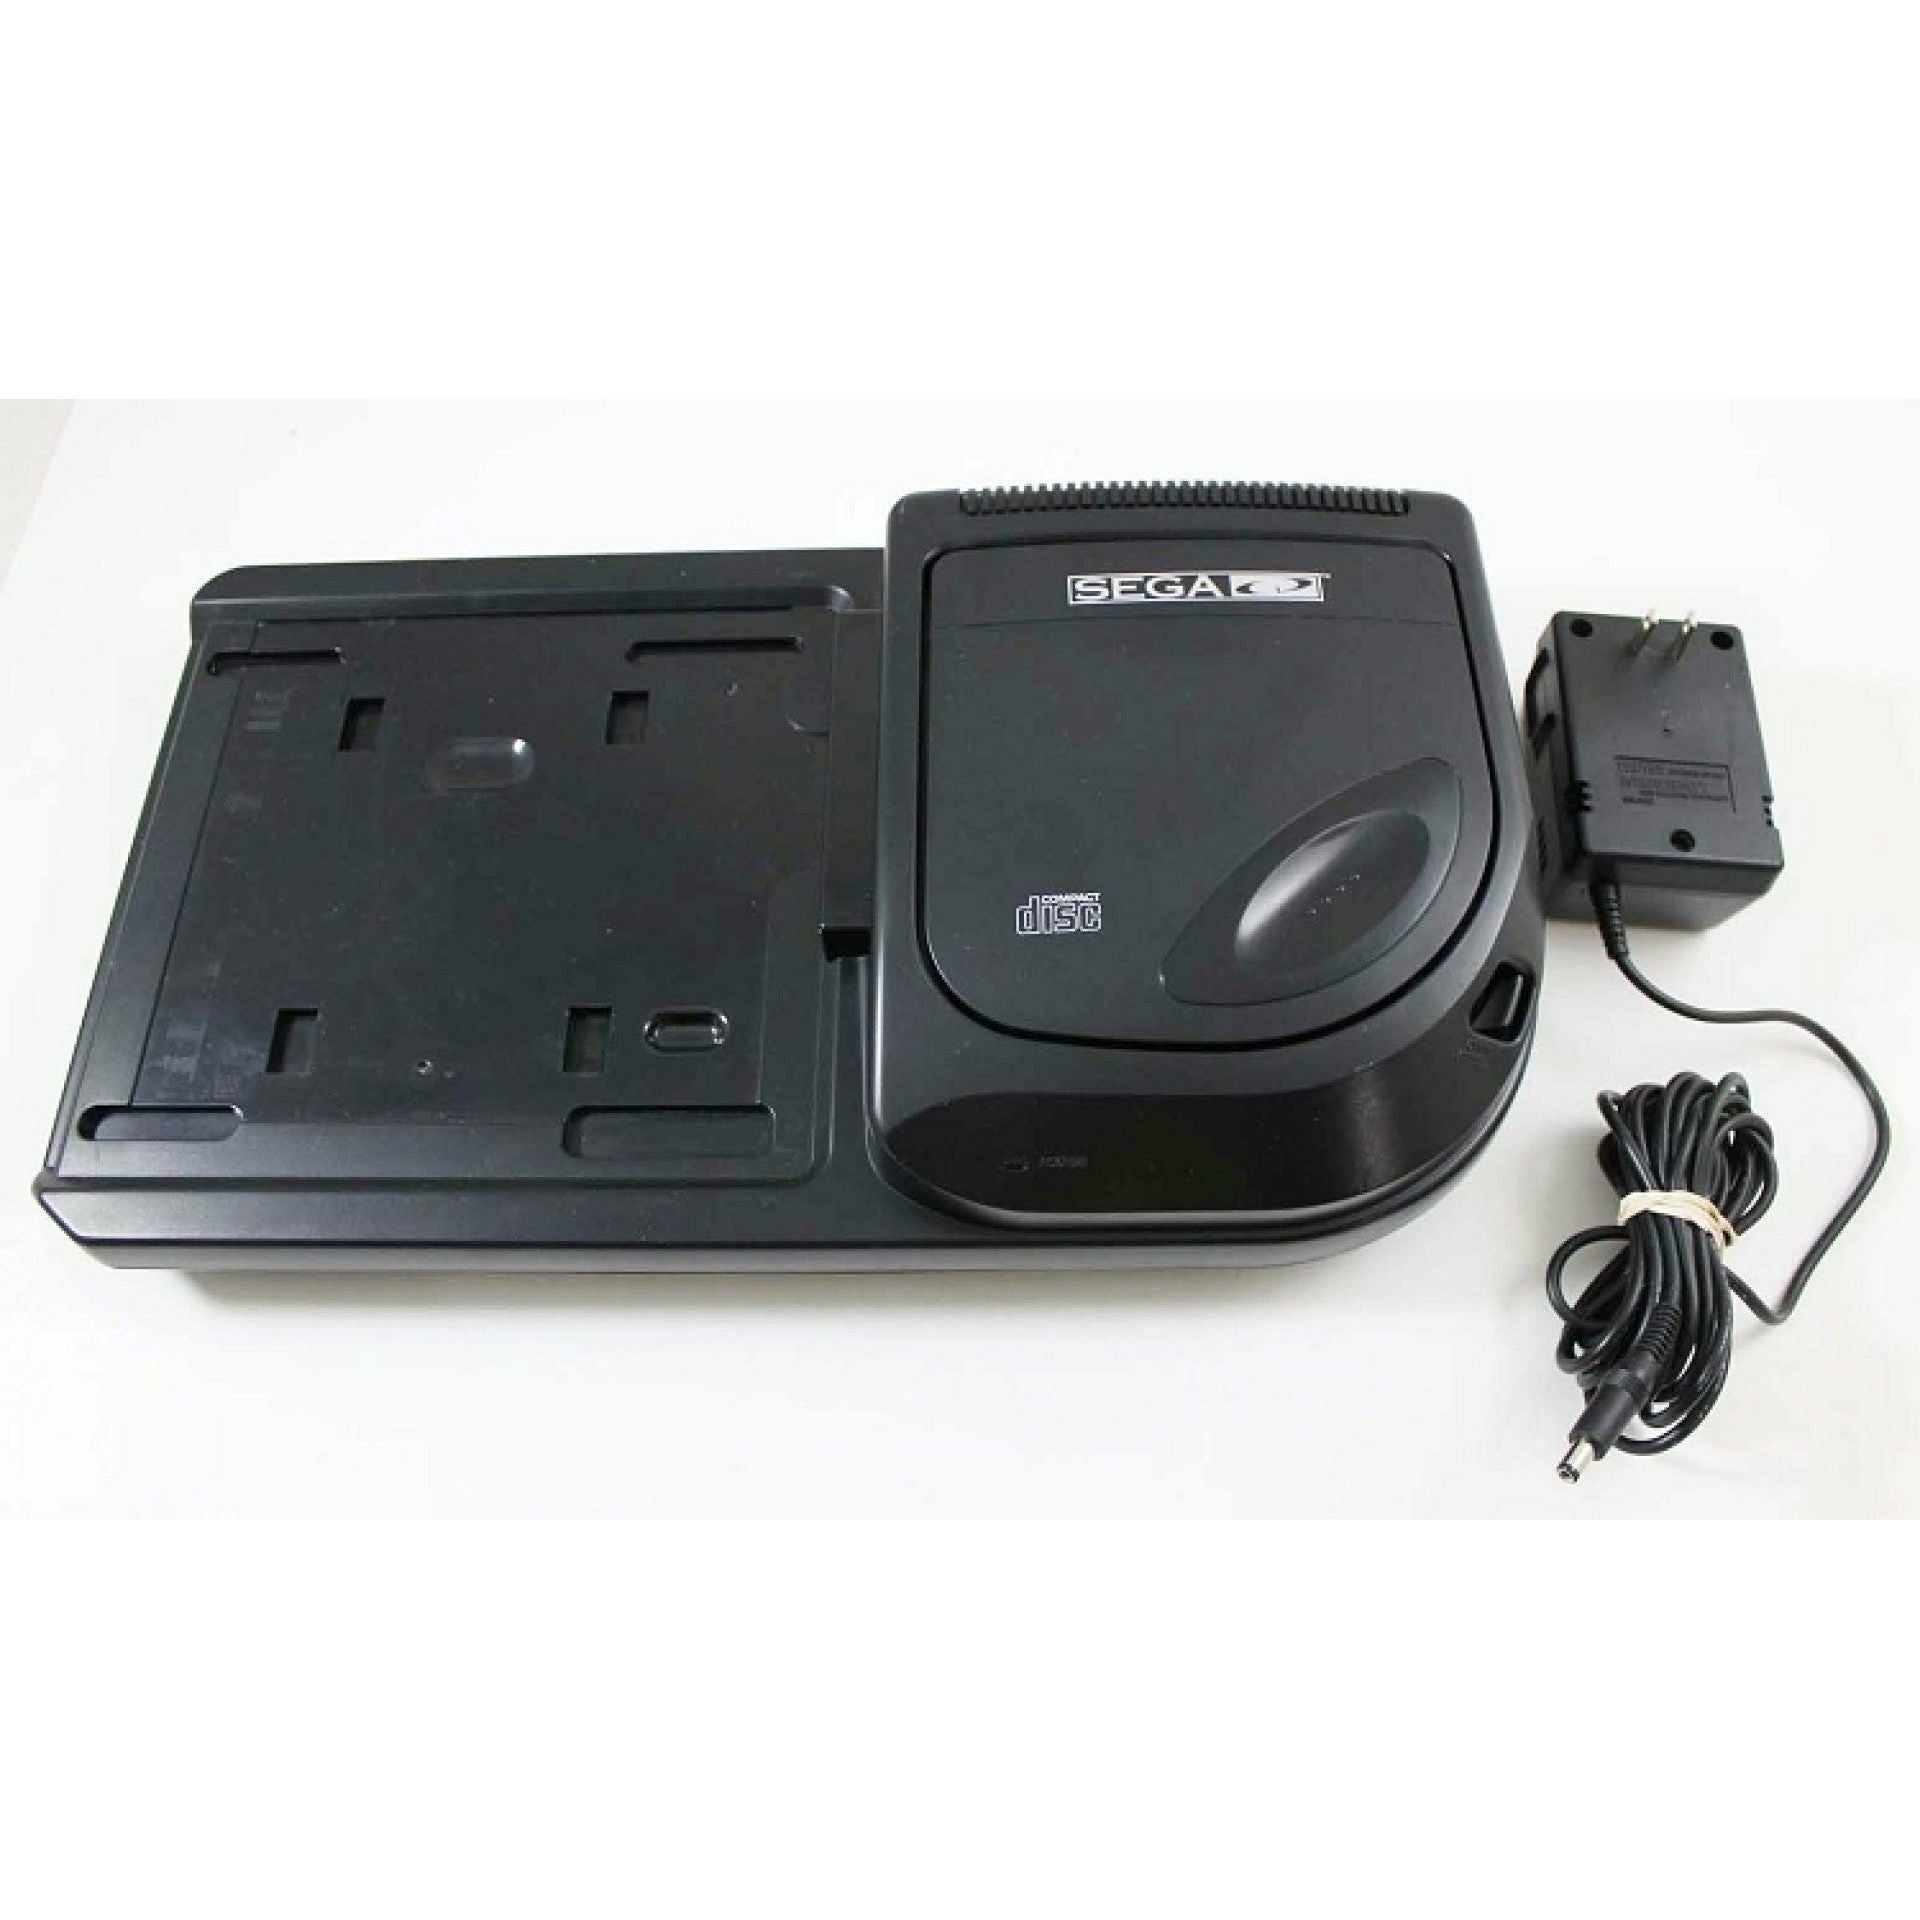 Système Sega CD modèle 2